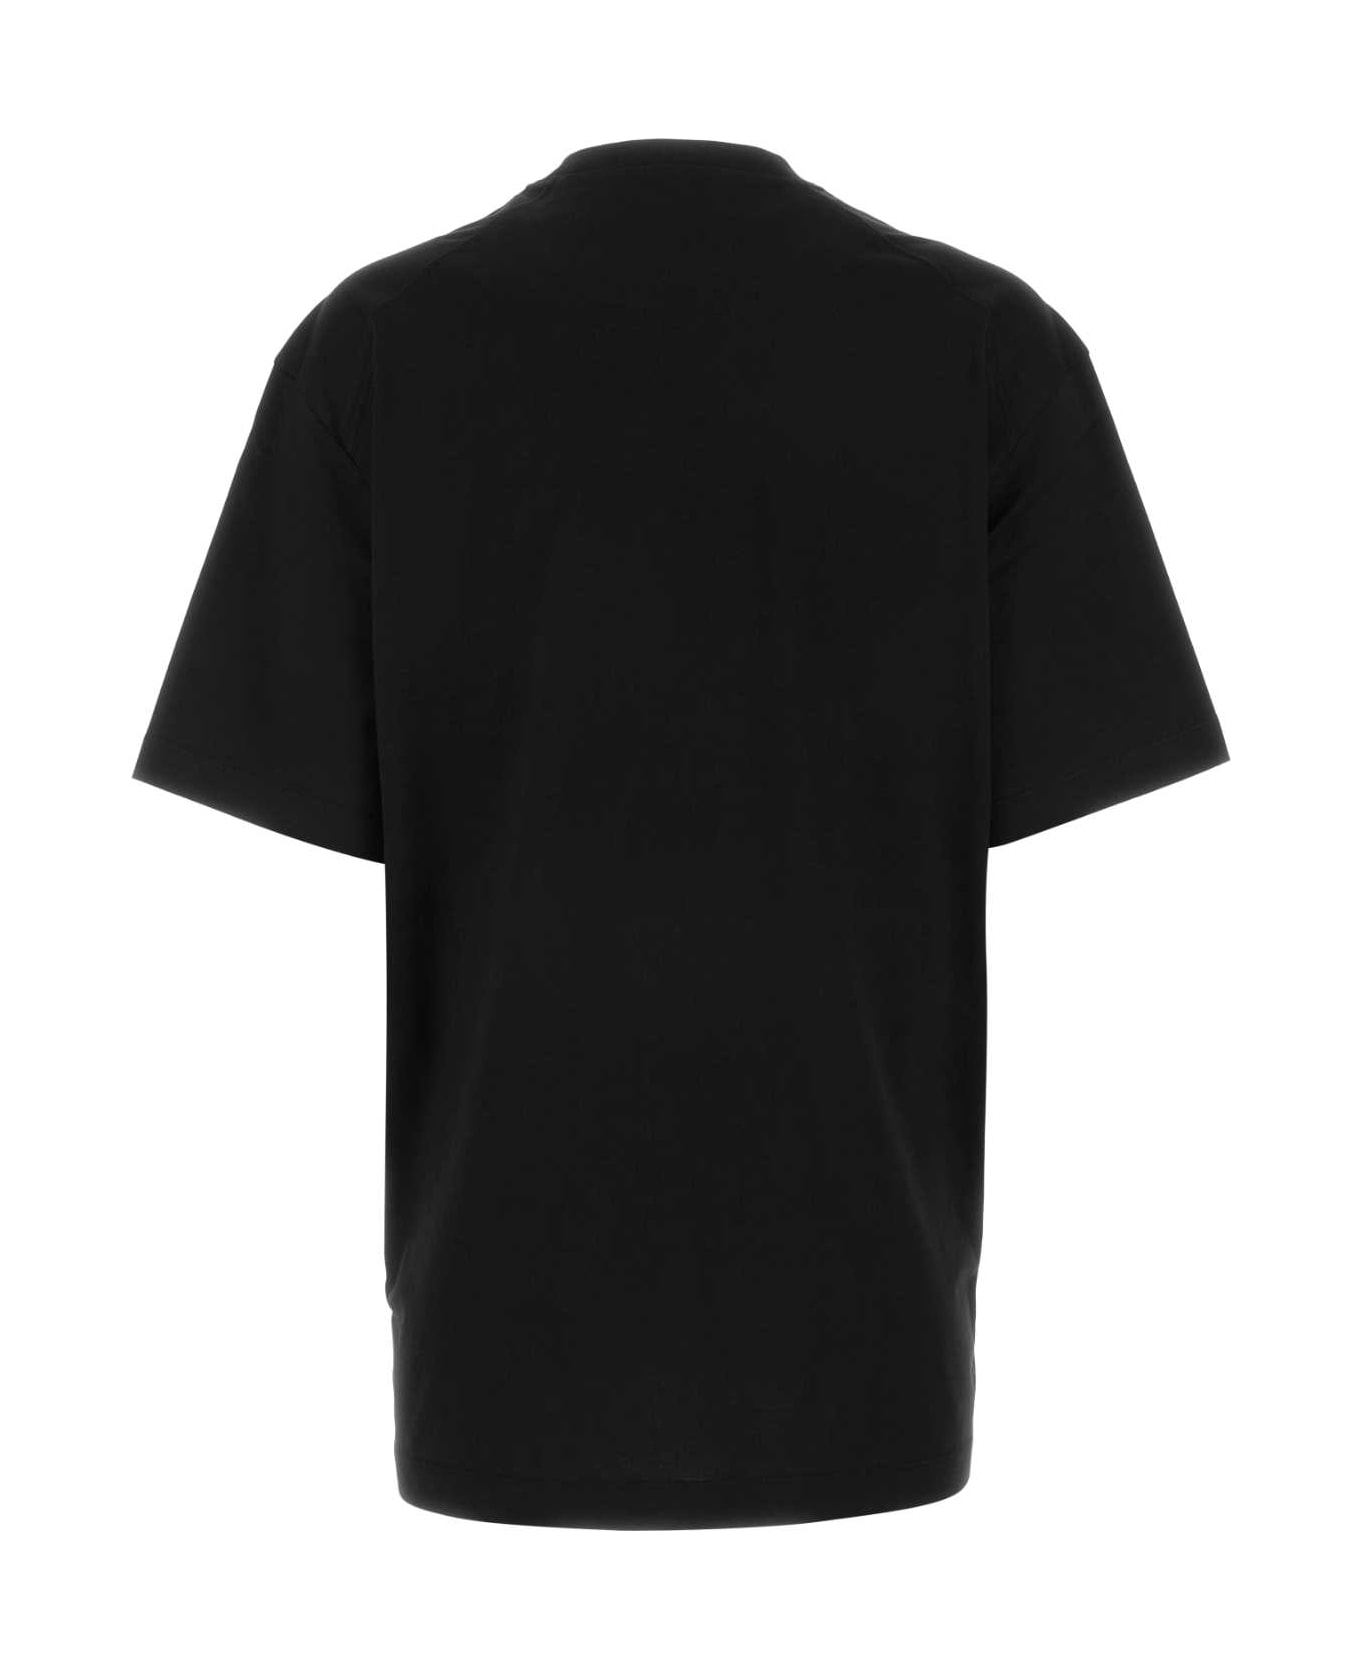 Y-3 Black Cotton Oversize T-shirt - BLACK Tシャツ